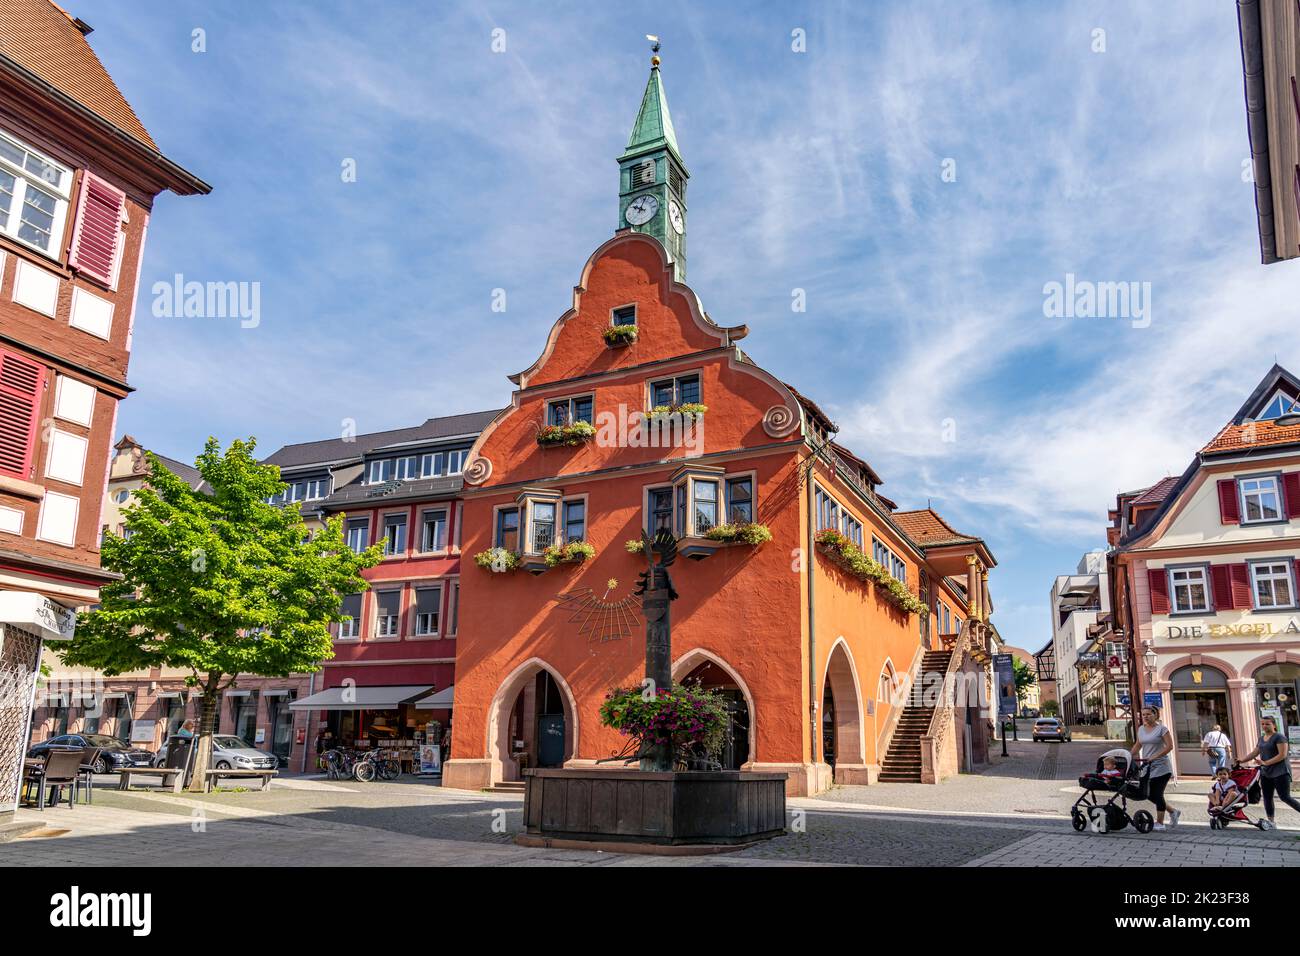 Das alte Rathaus in Lahr/Schwarzwald, Baden-Württemberg, Deutschland |  The old city hall in Lahr, Black Forest, Baden-Württemberg, Germany Stock Photo